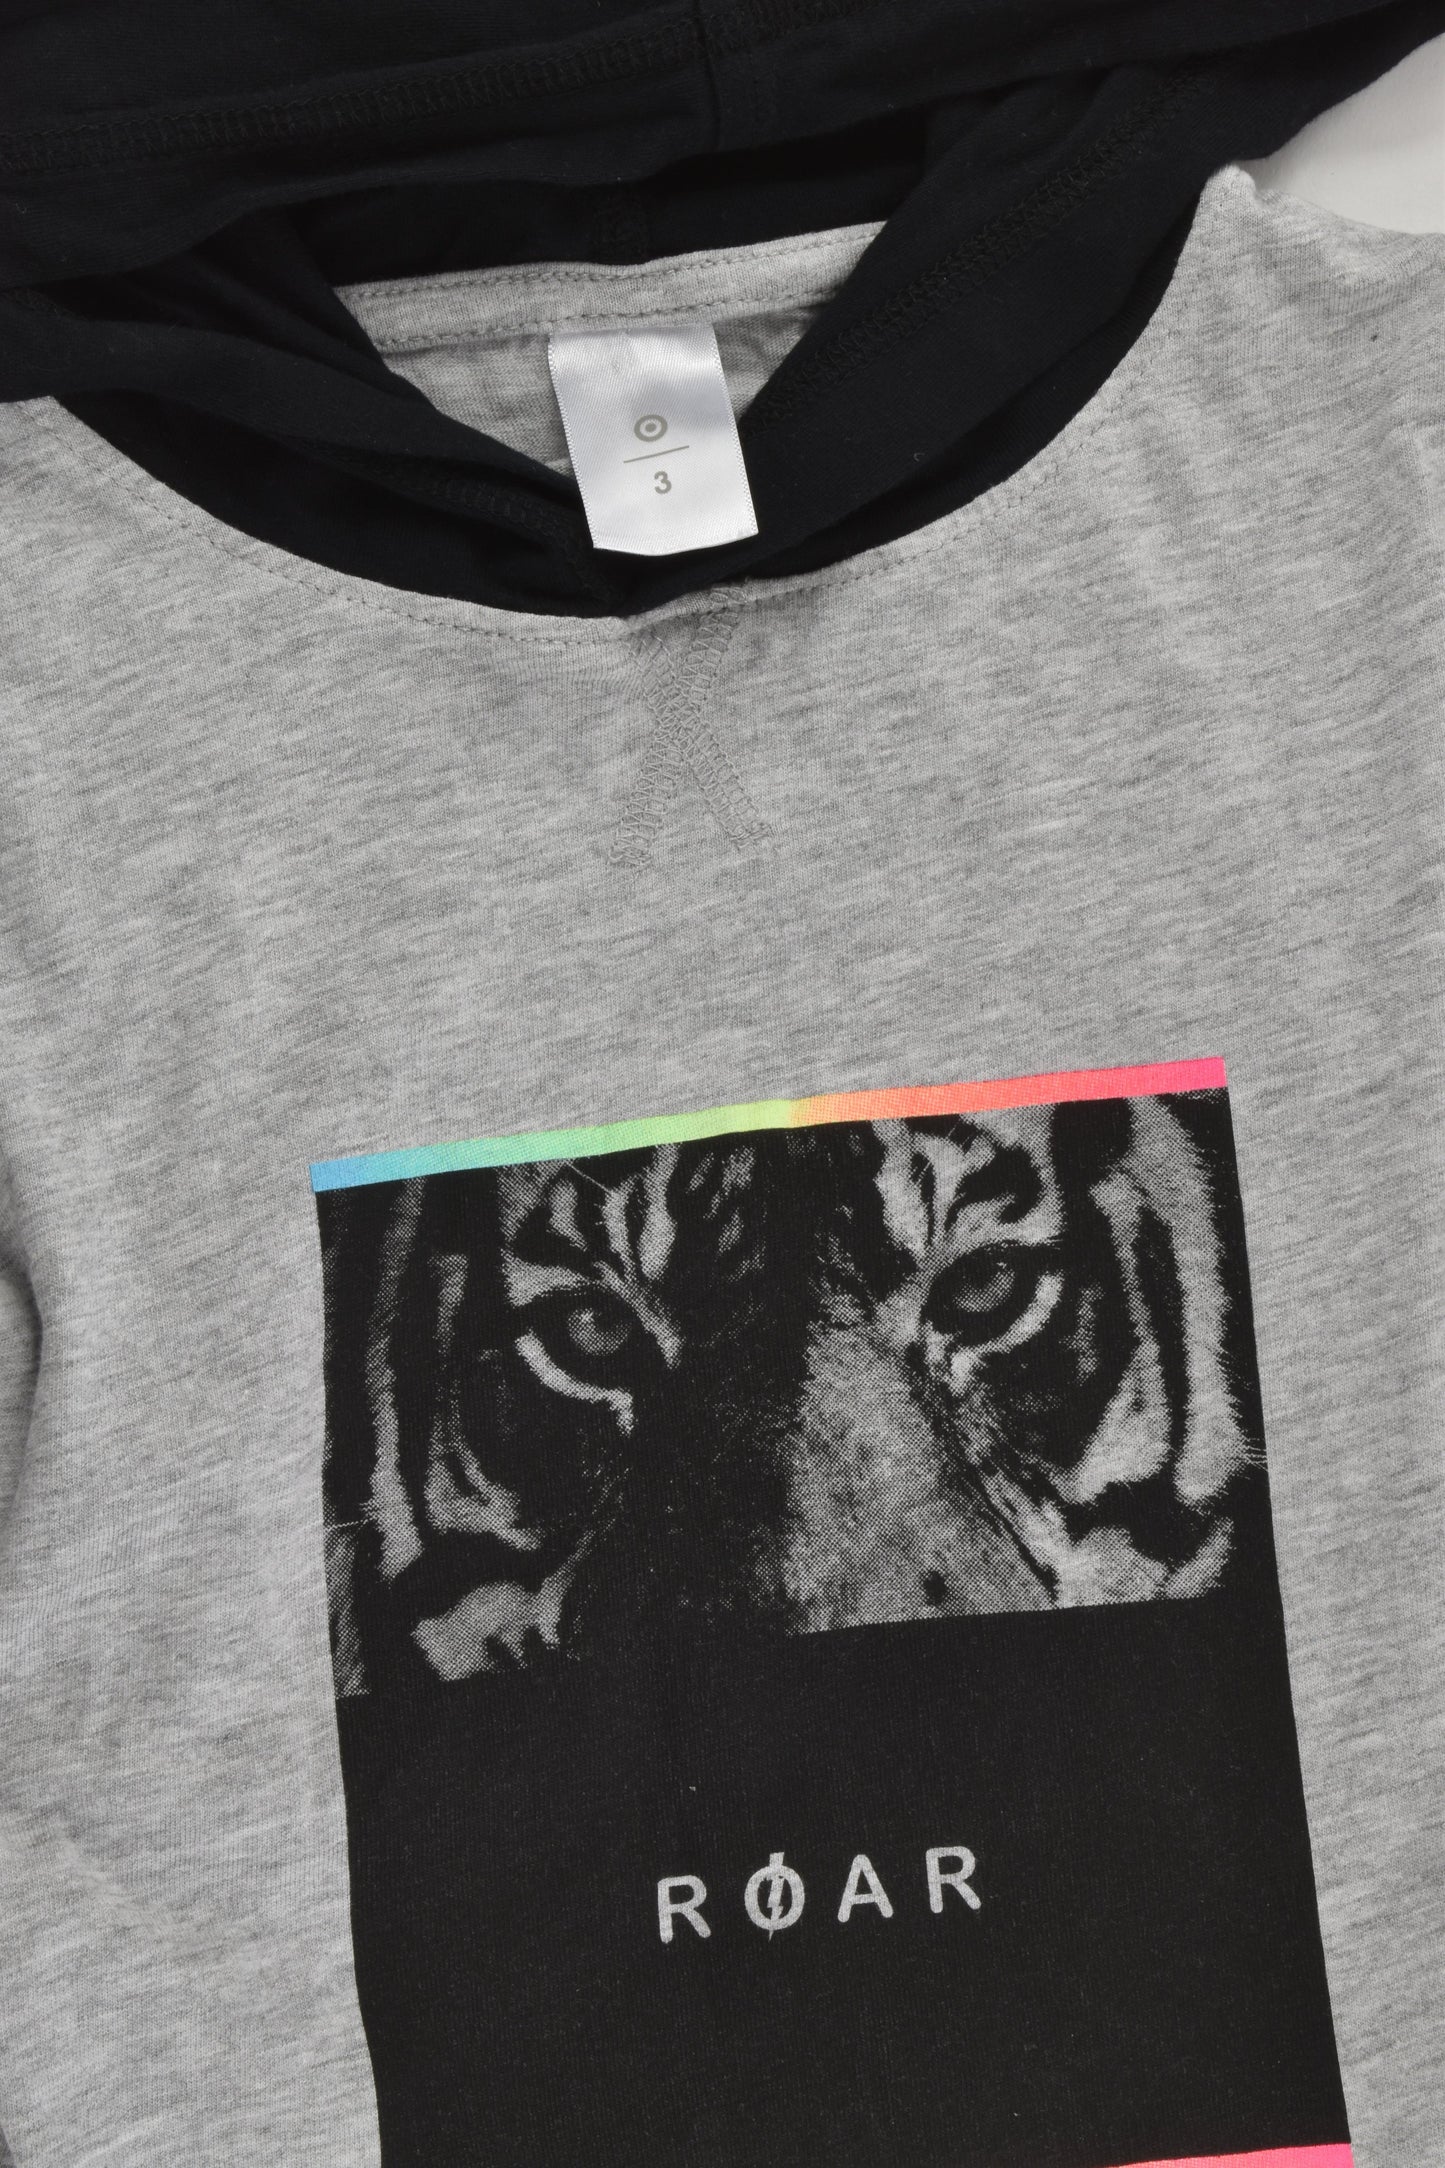 Target Size 3 'Roar' Hooded T-shirt